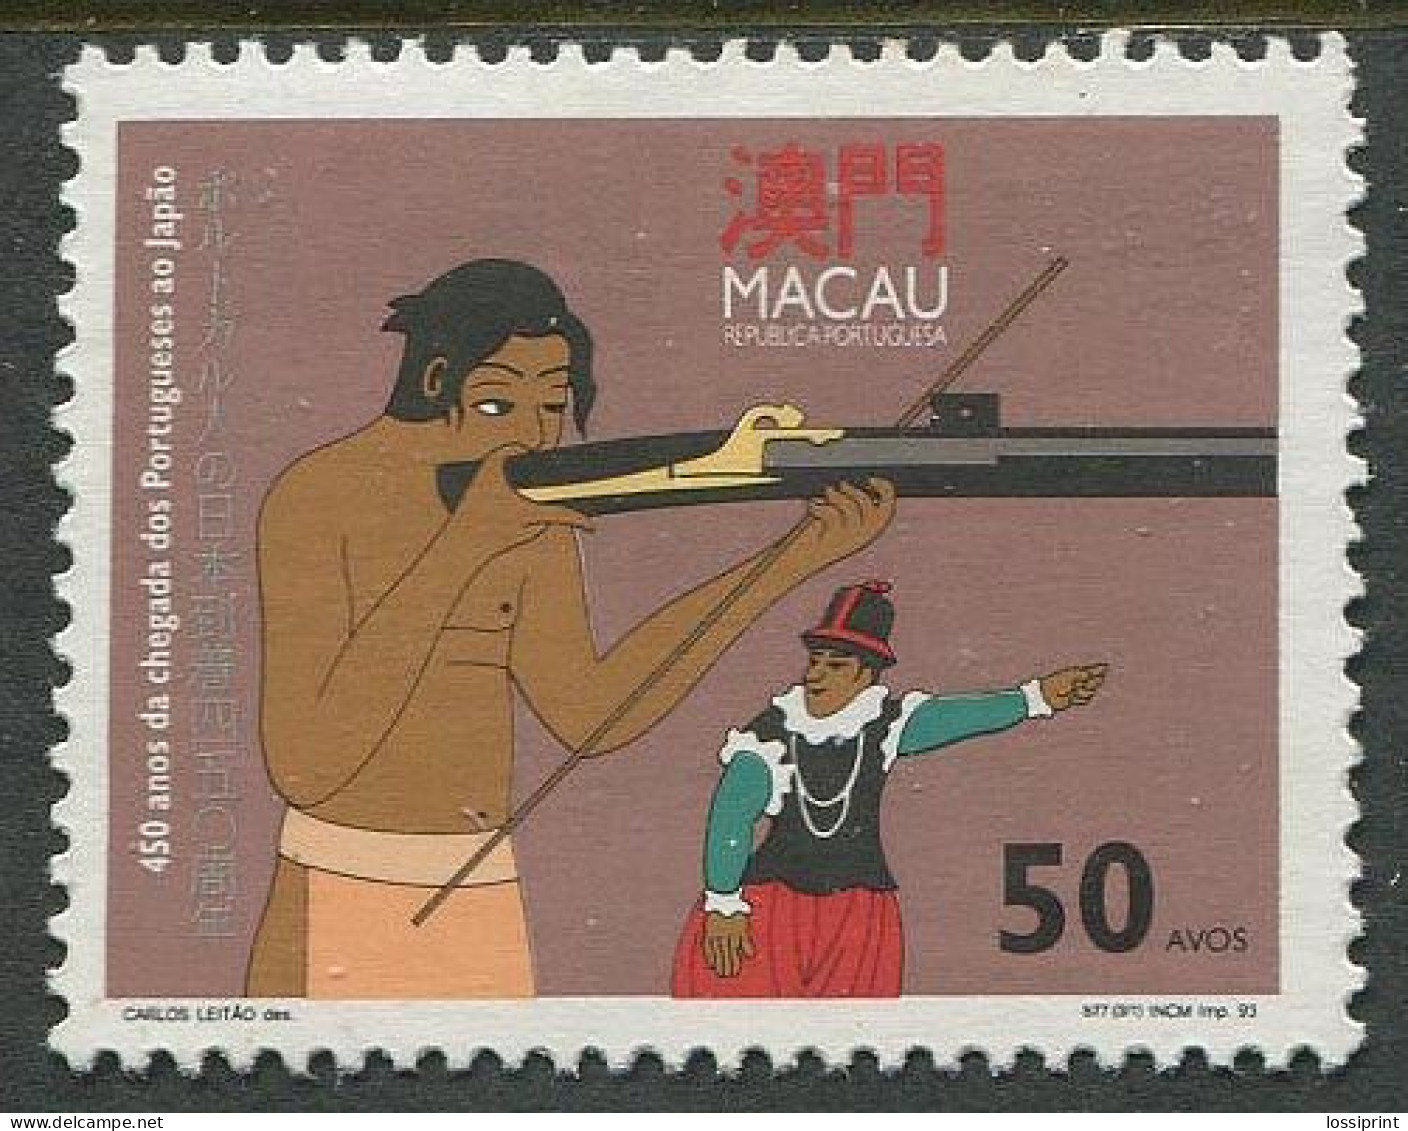 Macau:Unused Stamp Shooting, 1993, MNH - Shooting (Weapons)